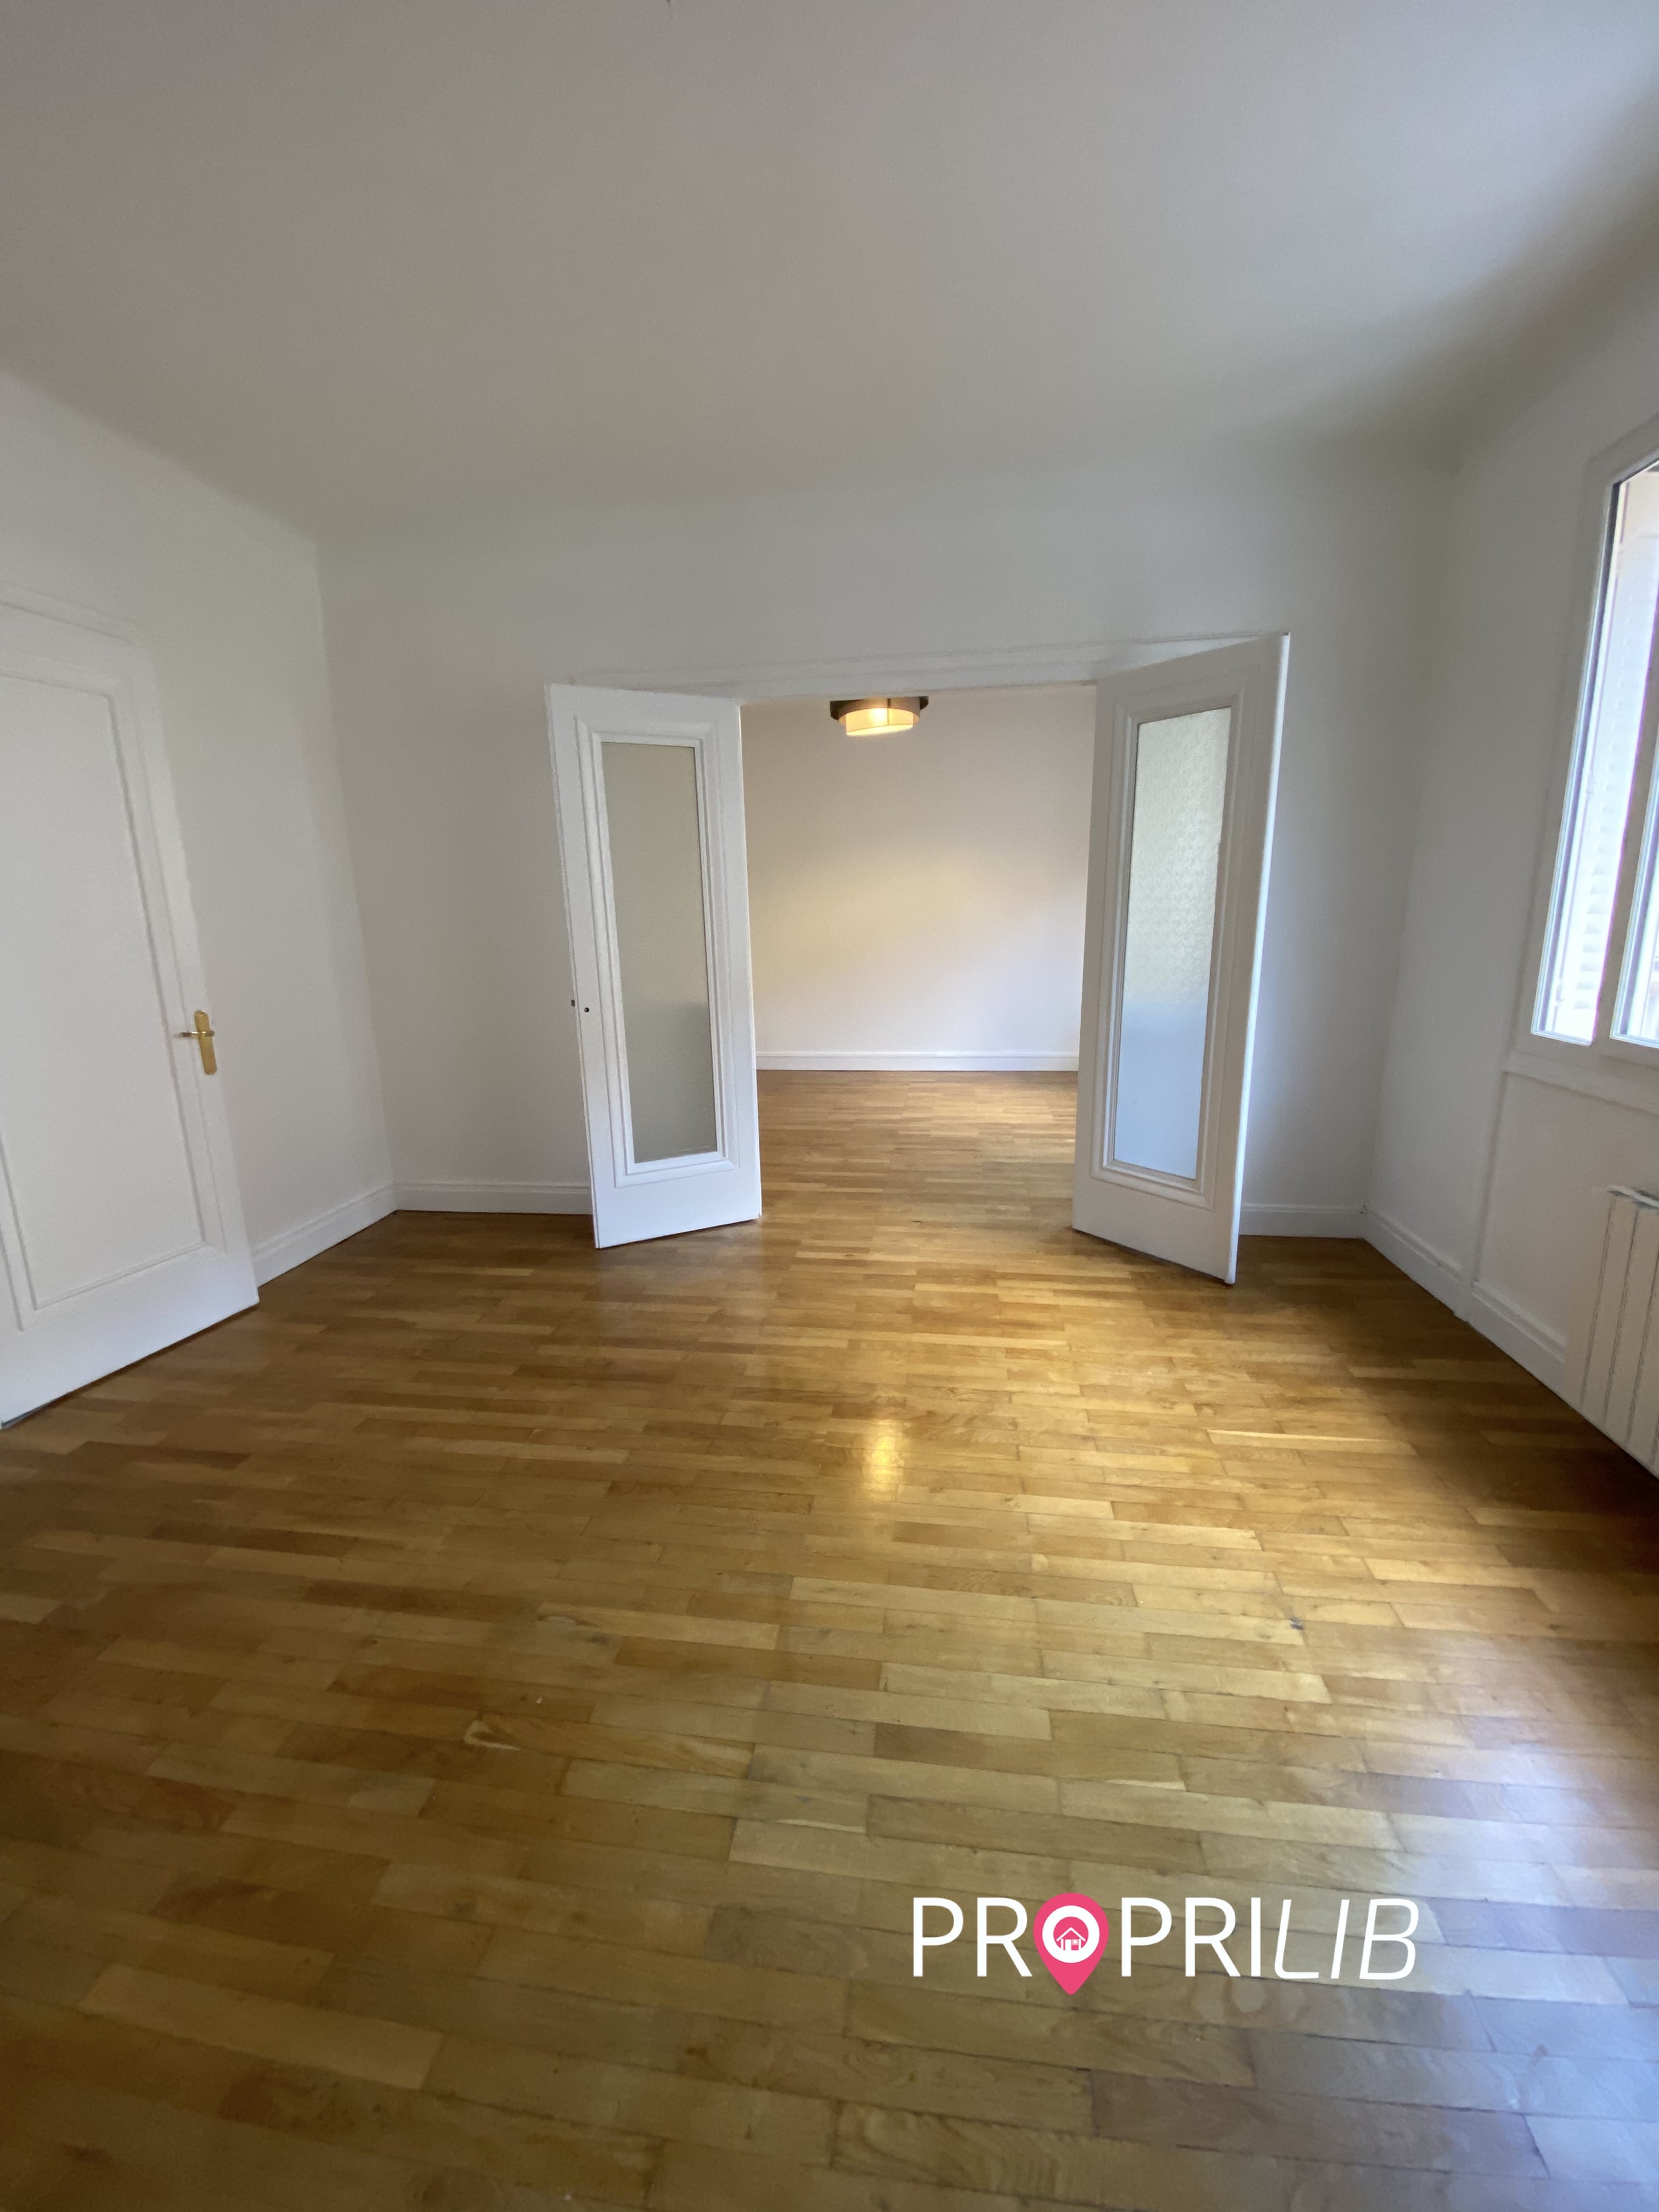 PropriLib l’agence immobilière en ligne vend cet appartement dans Lyon 3ème